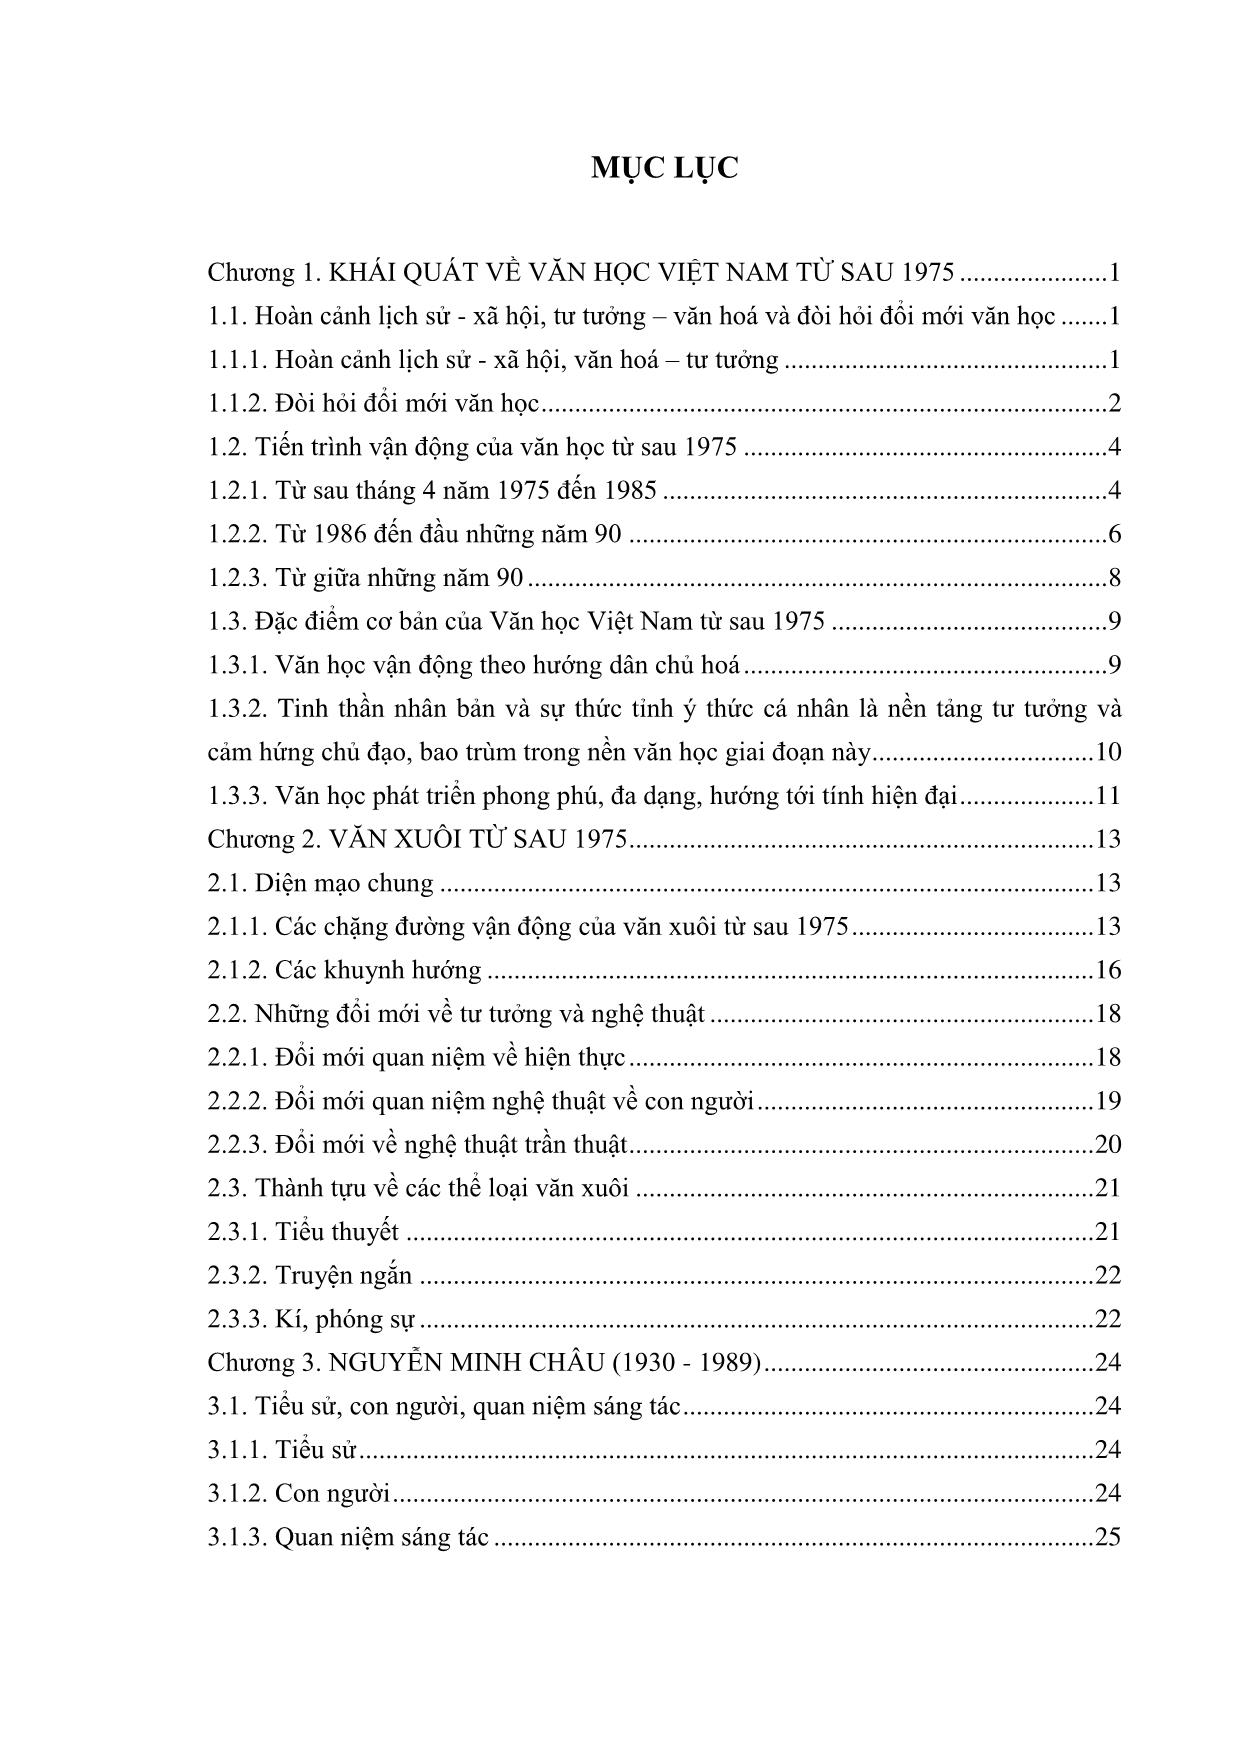 Giáo trình Văn học Việt Nam hiện đại 2B trang 2